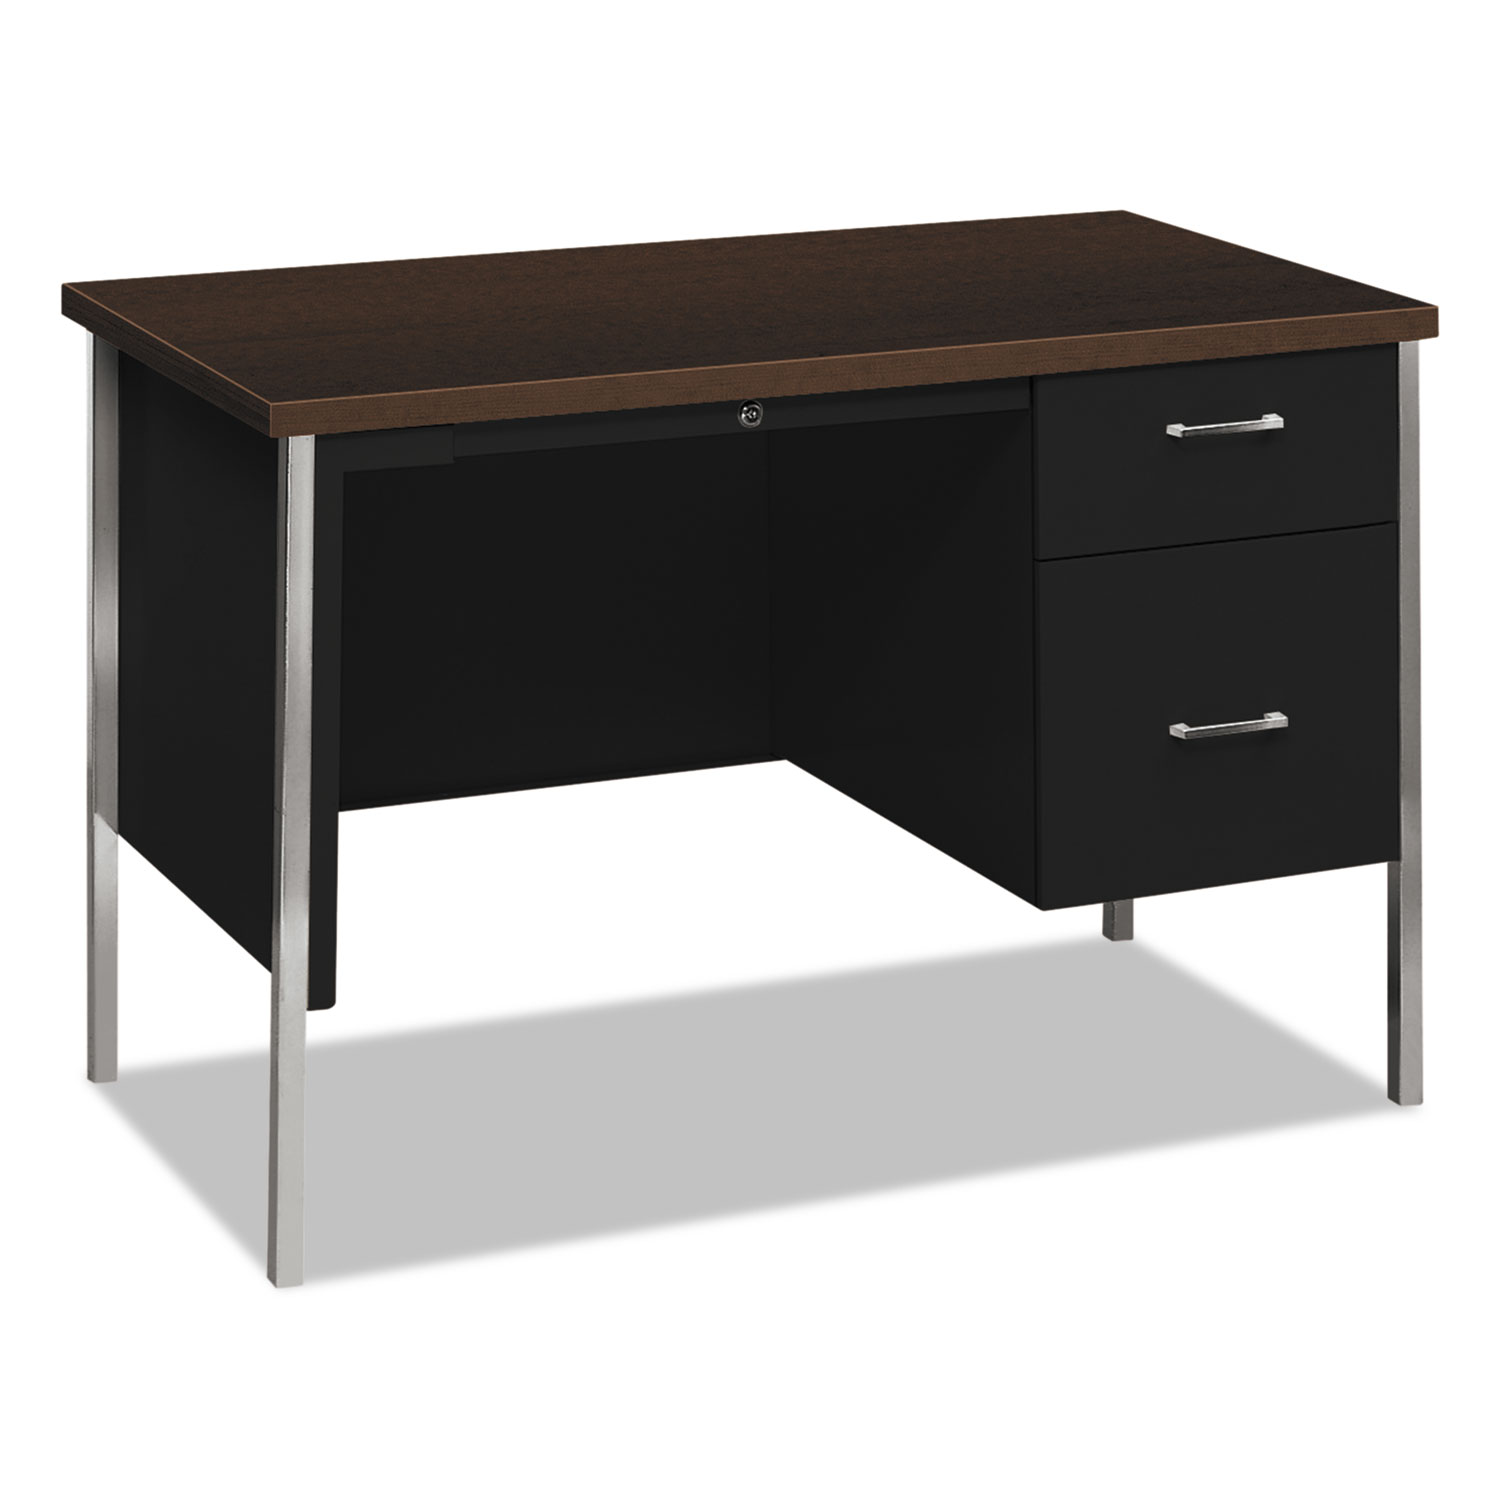  HON H34002R.MOCH.P 34000 Series Right Pedestal Desk, 45.25w x 24d x 29.5h, Mocha/Black (HON34002RMOP) 